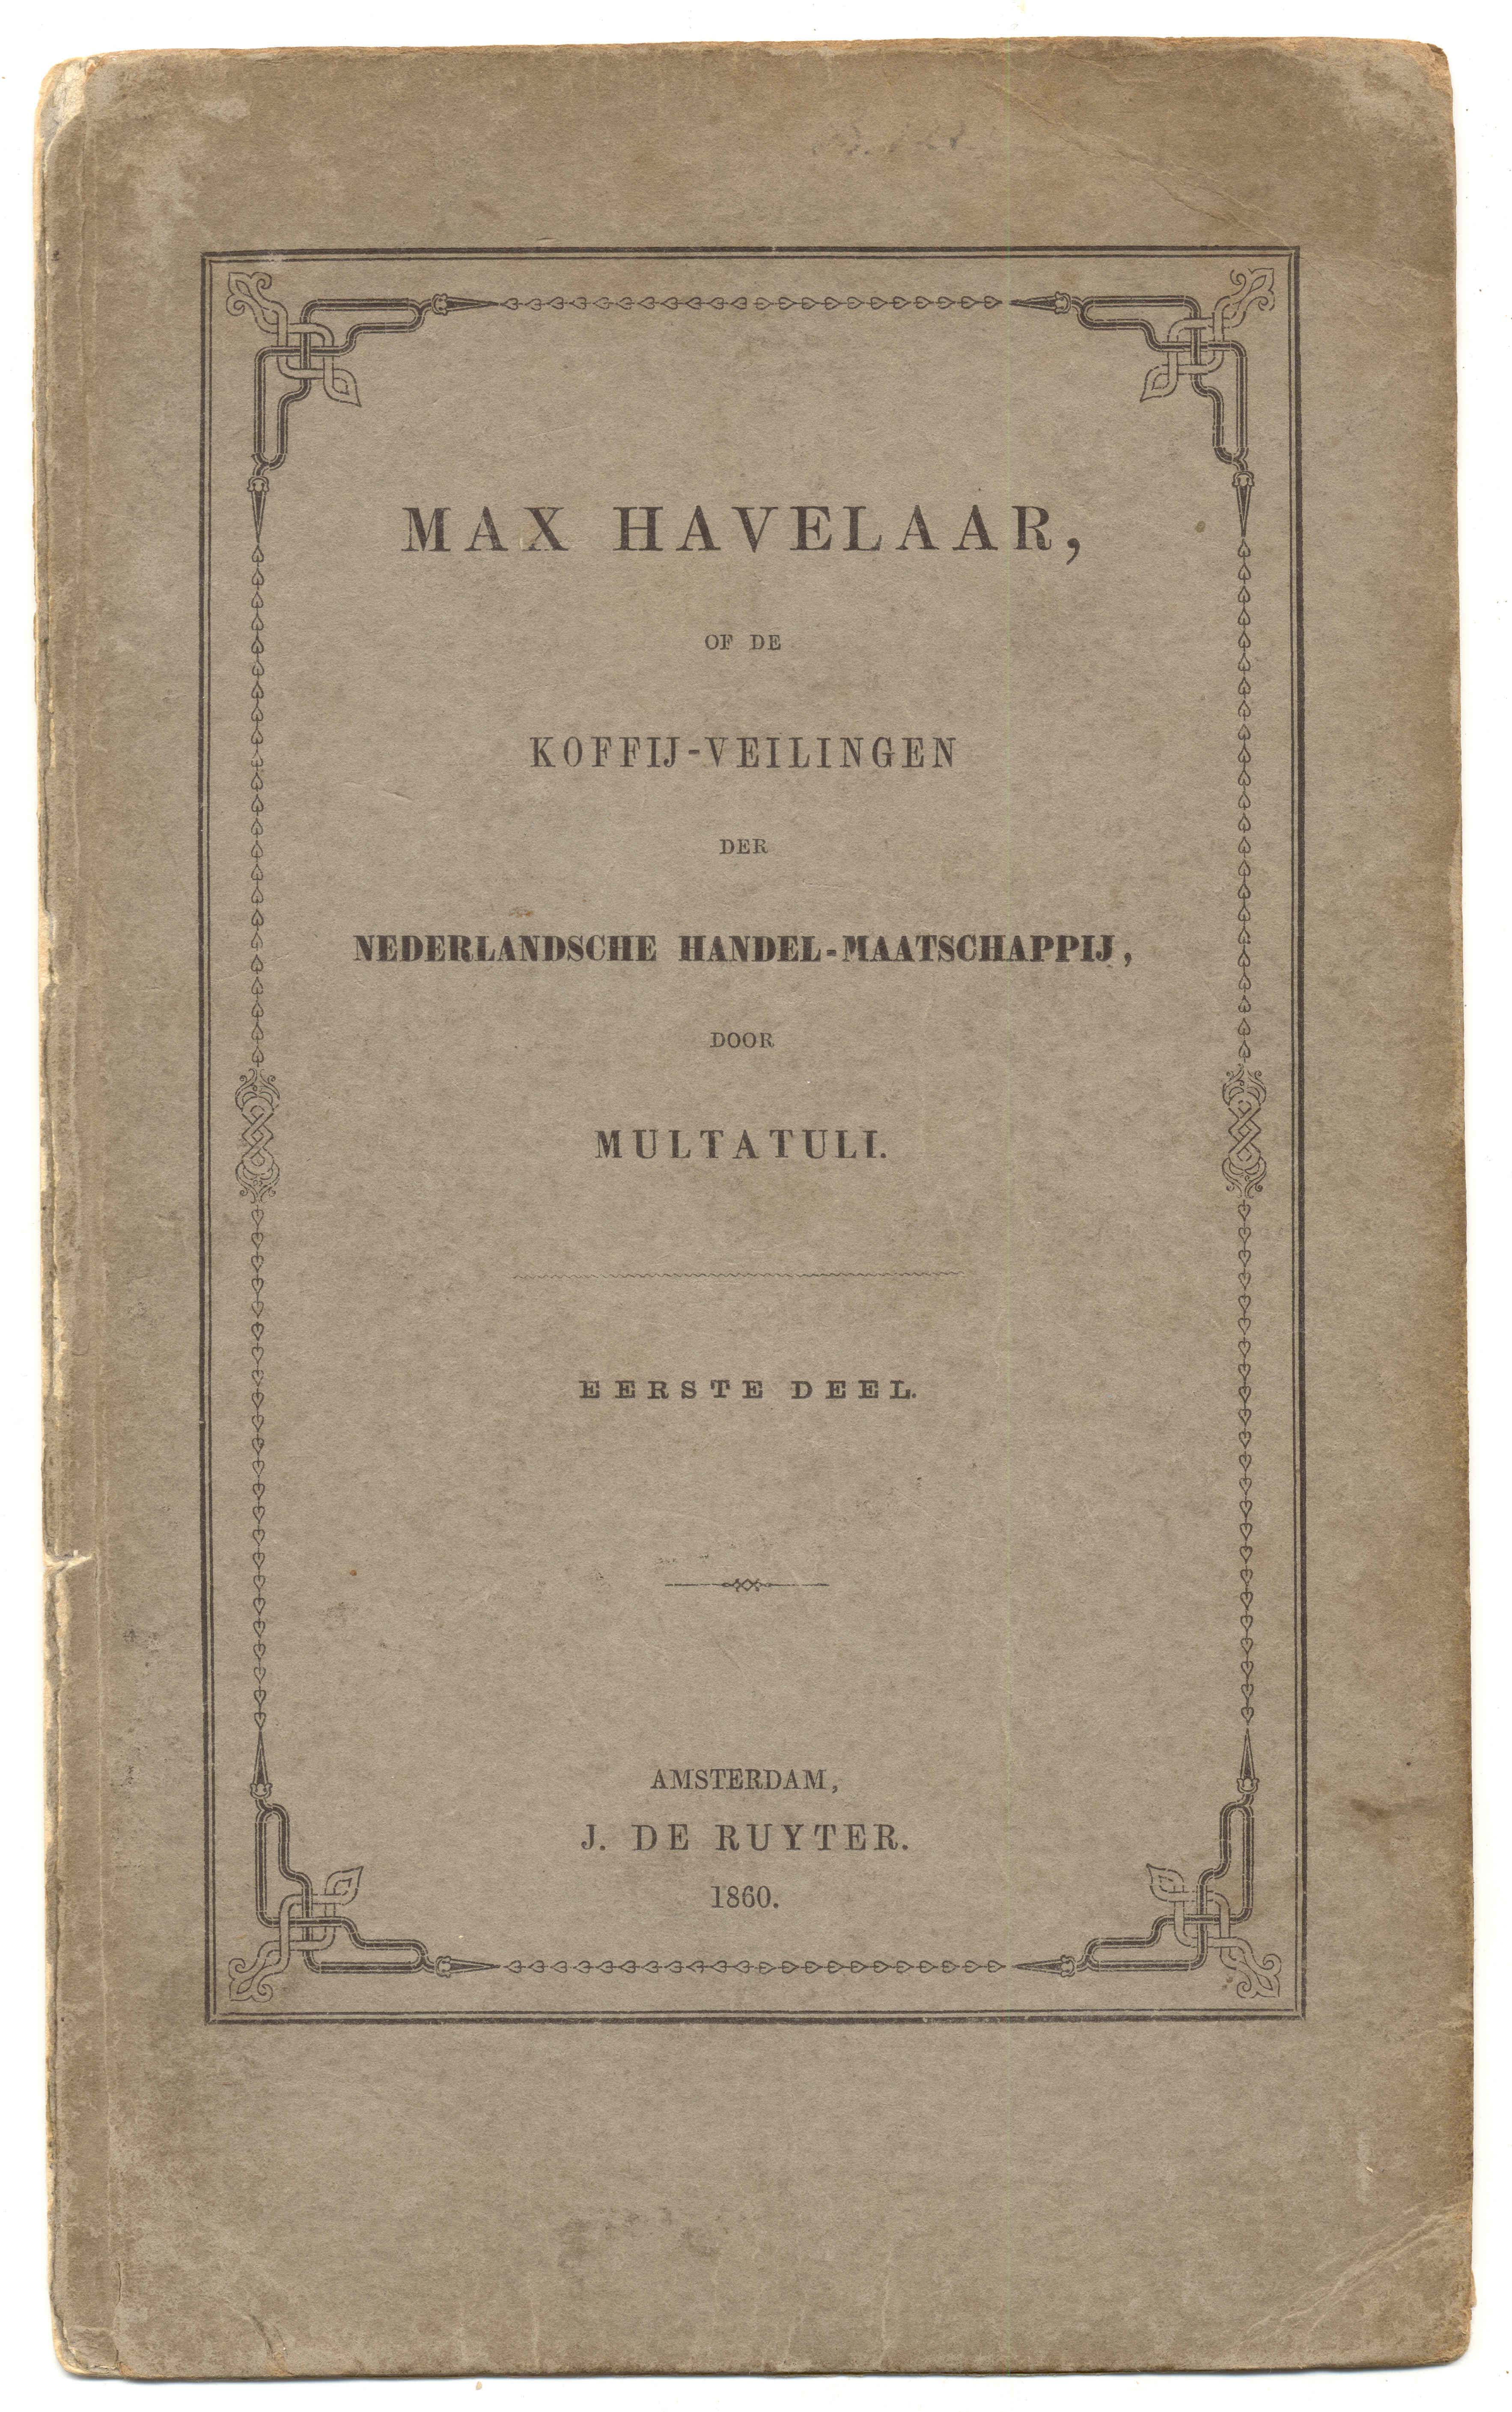 In 1860 publiceert Multatuli, pseudoniem van Eduard Douwes Dekker, de eerste druk van het boek Max Havelaar. Wikimedia Commons.